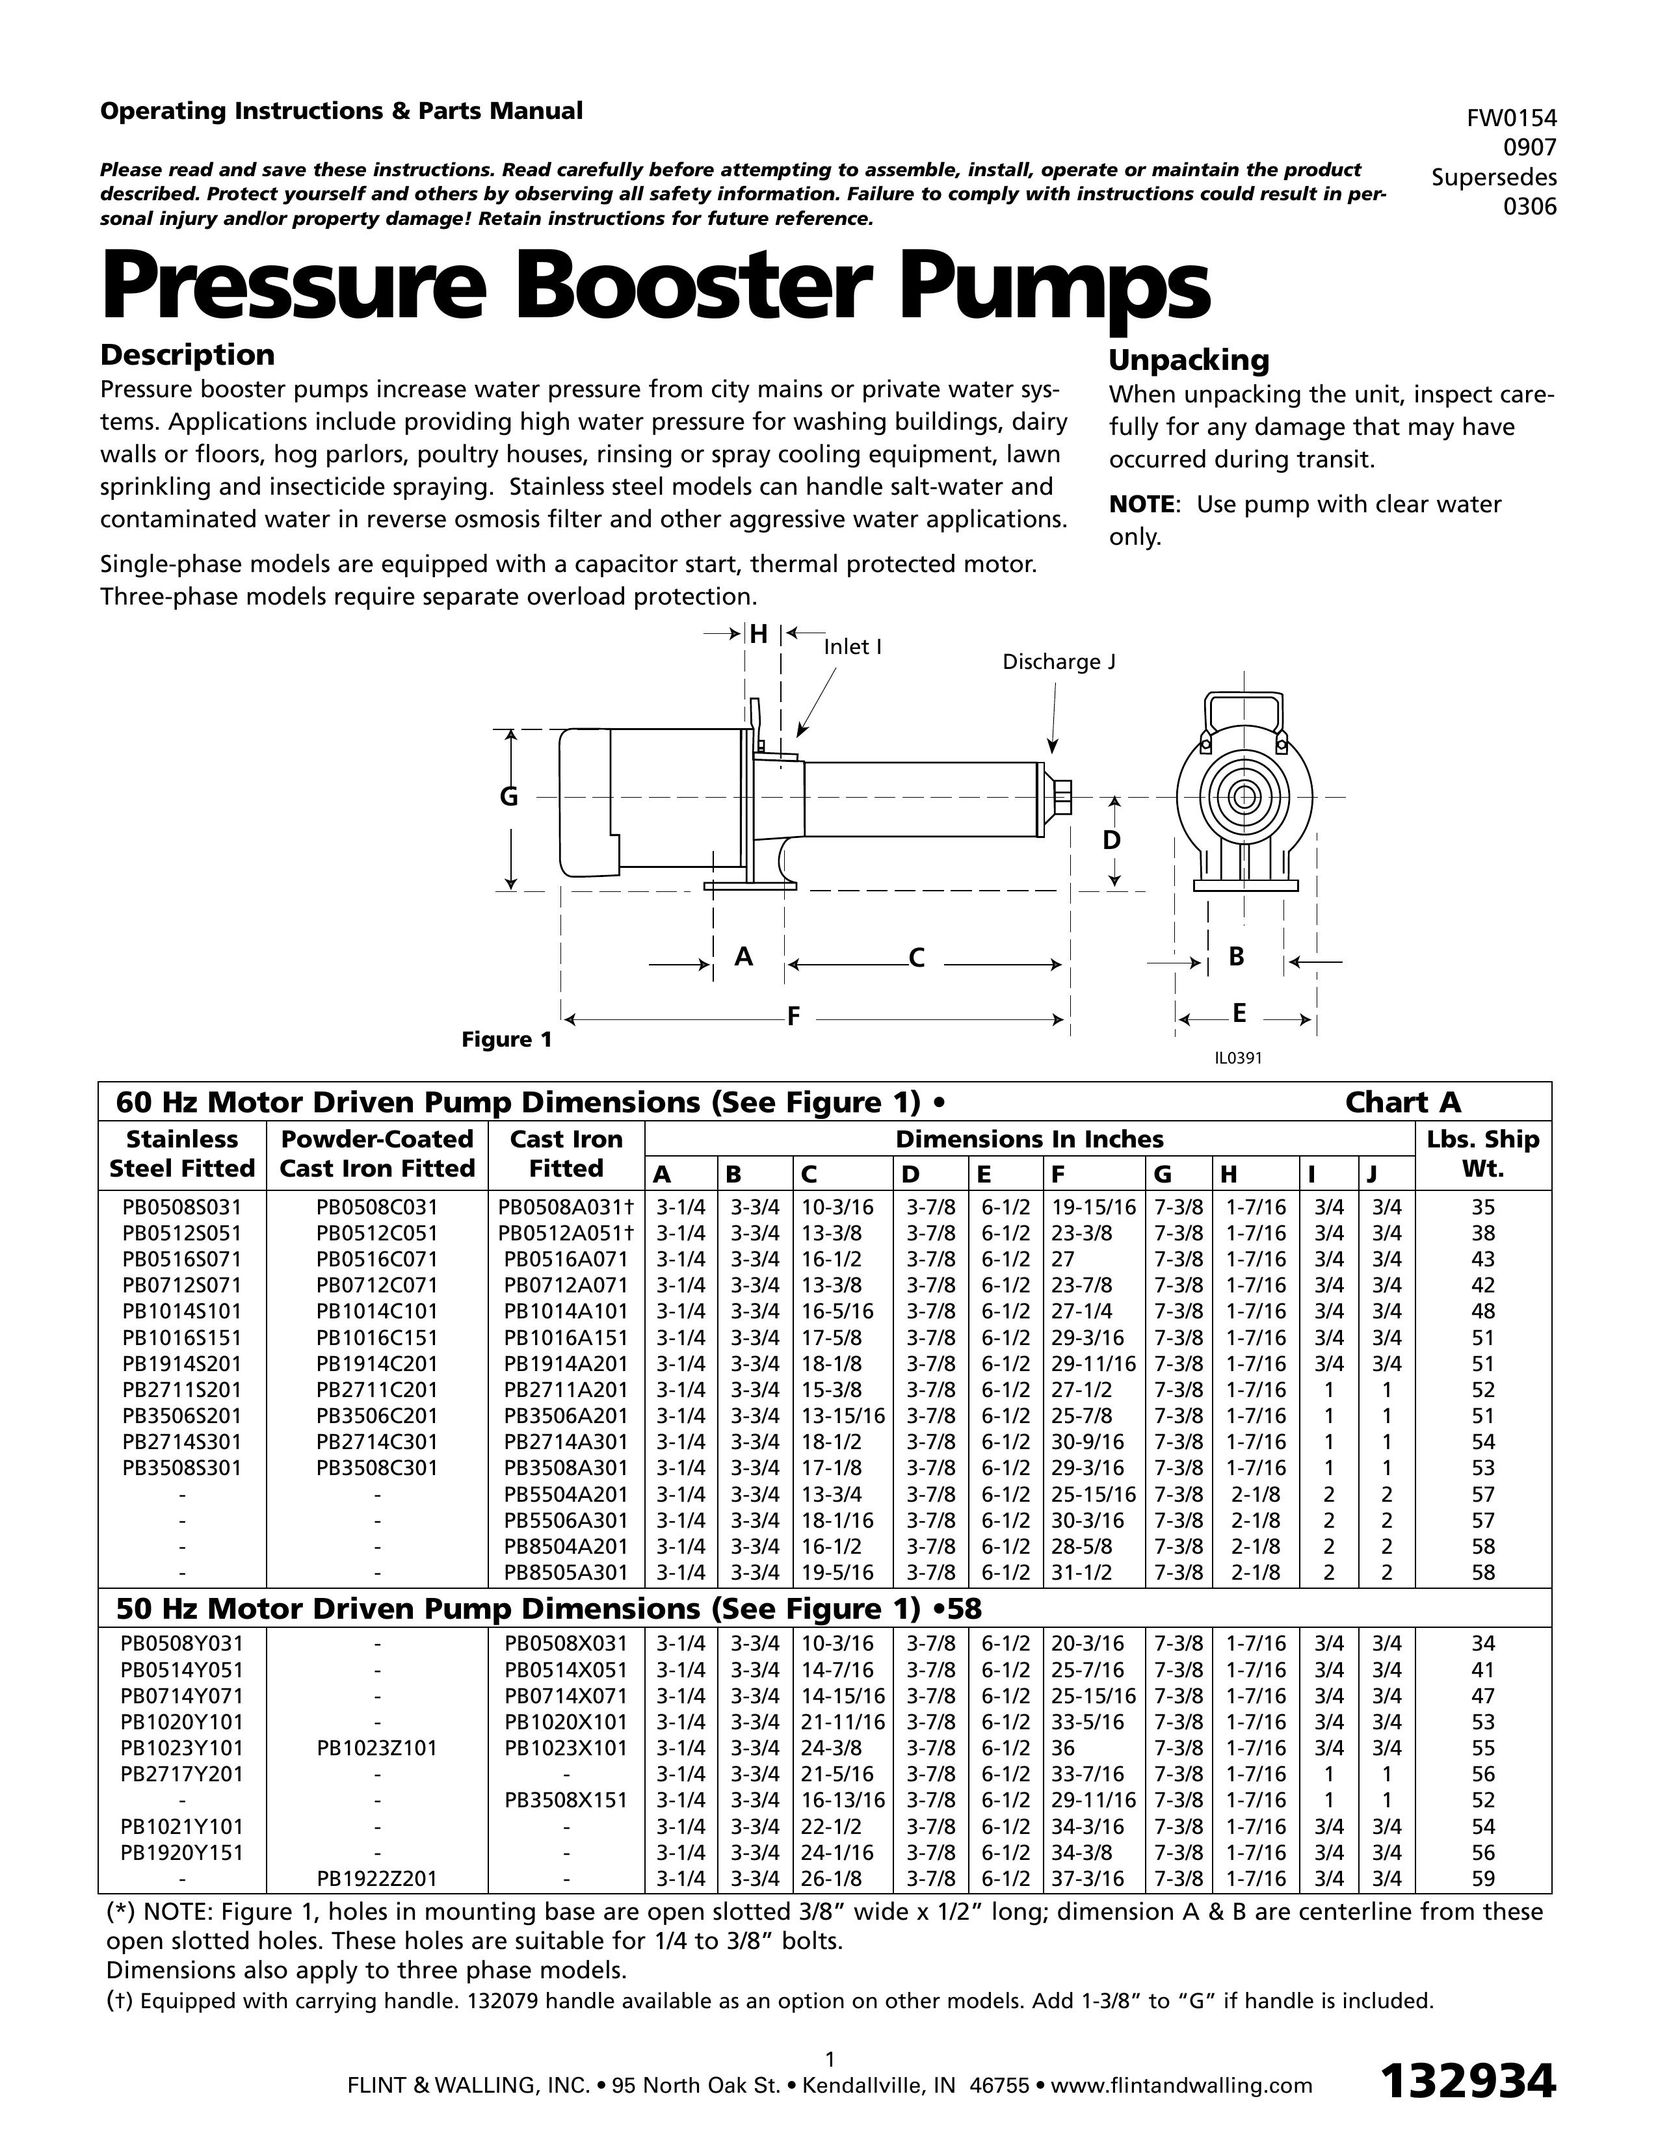 HP (Hewlett-Packard) 0306 Water Pump User Manual